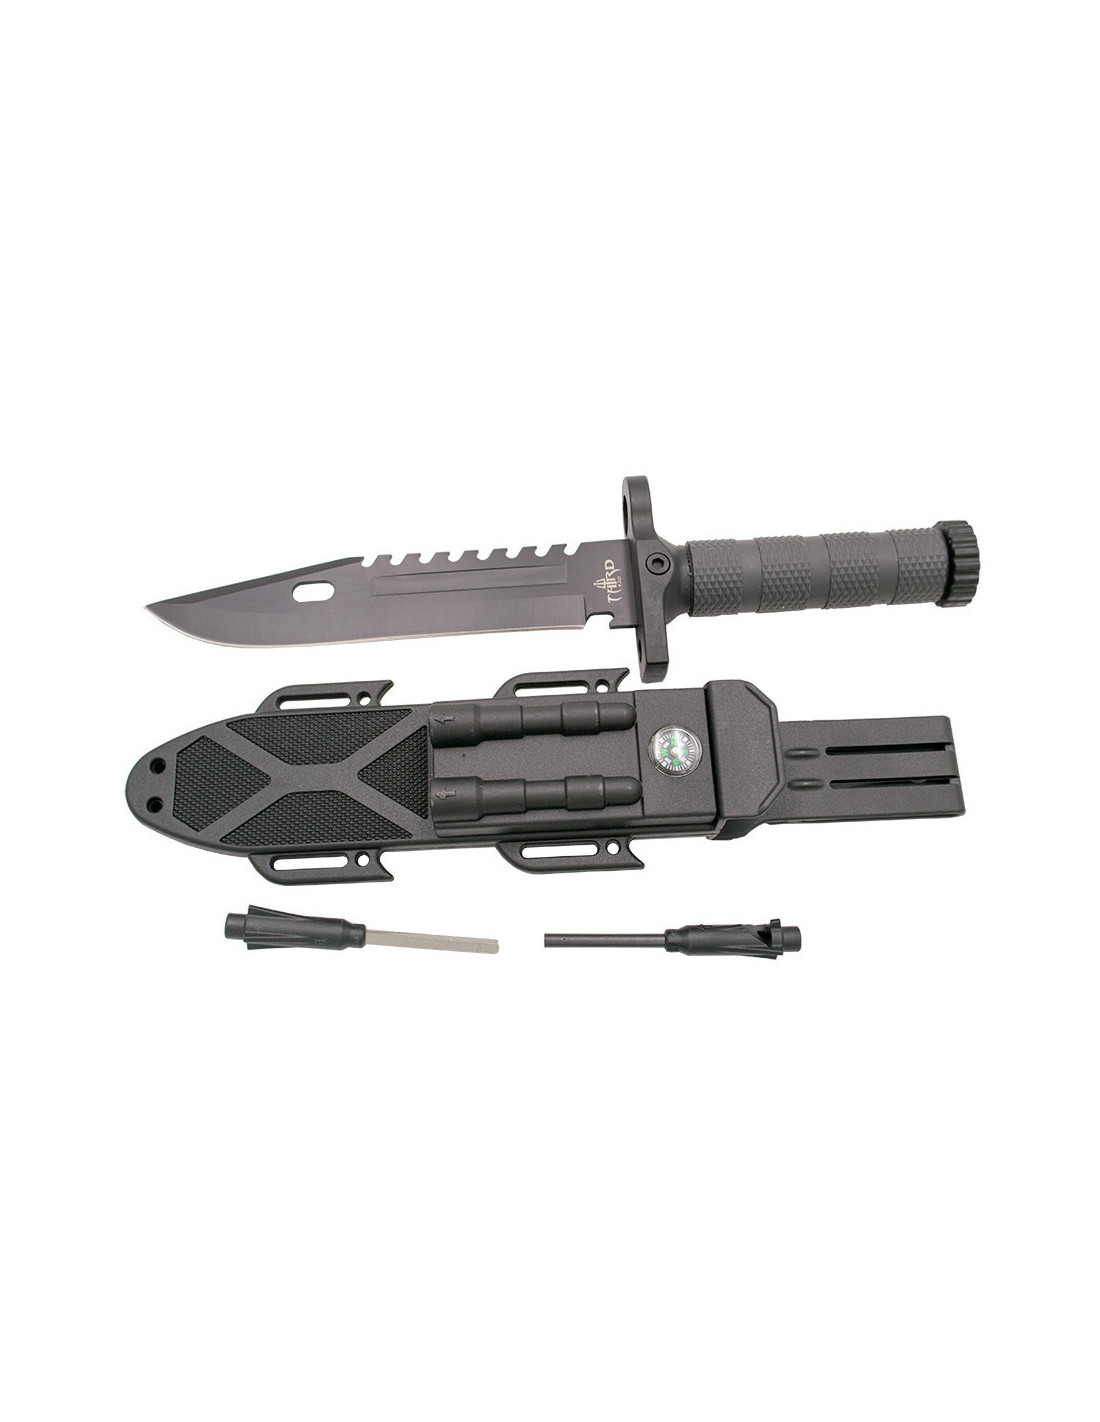 Cuchillo Supervivencia 32033 - Busqueda por Tipos